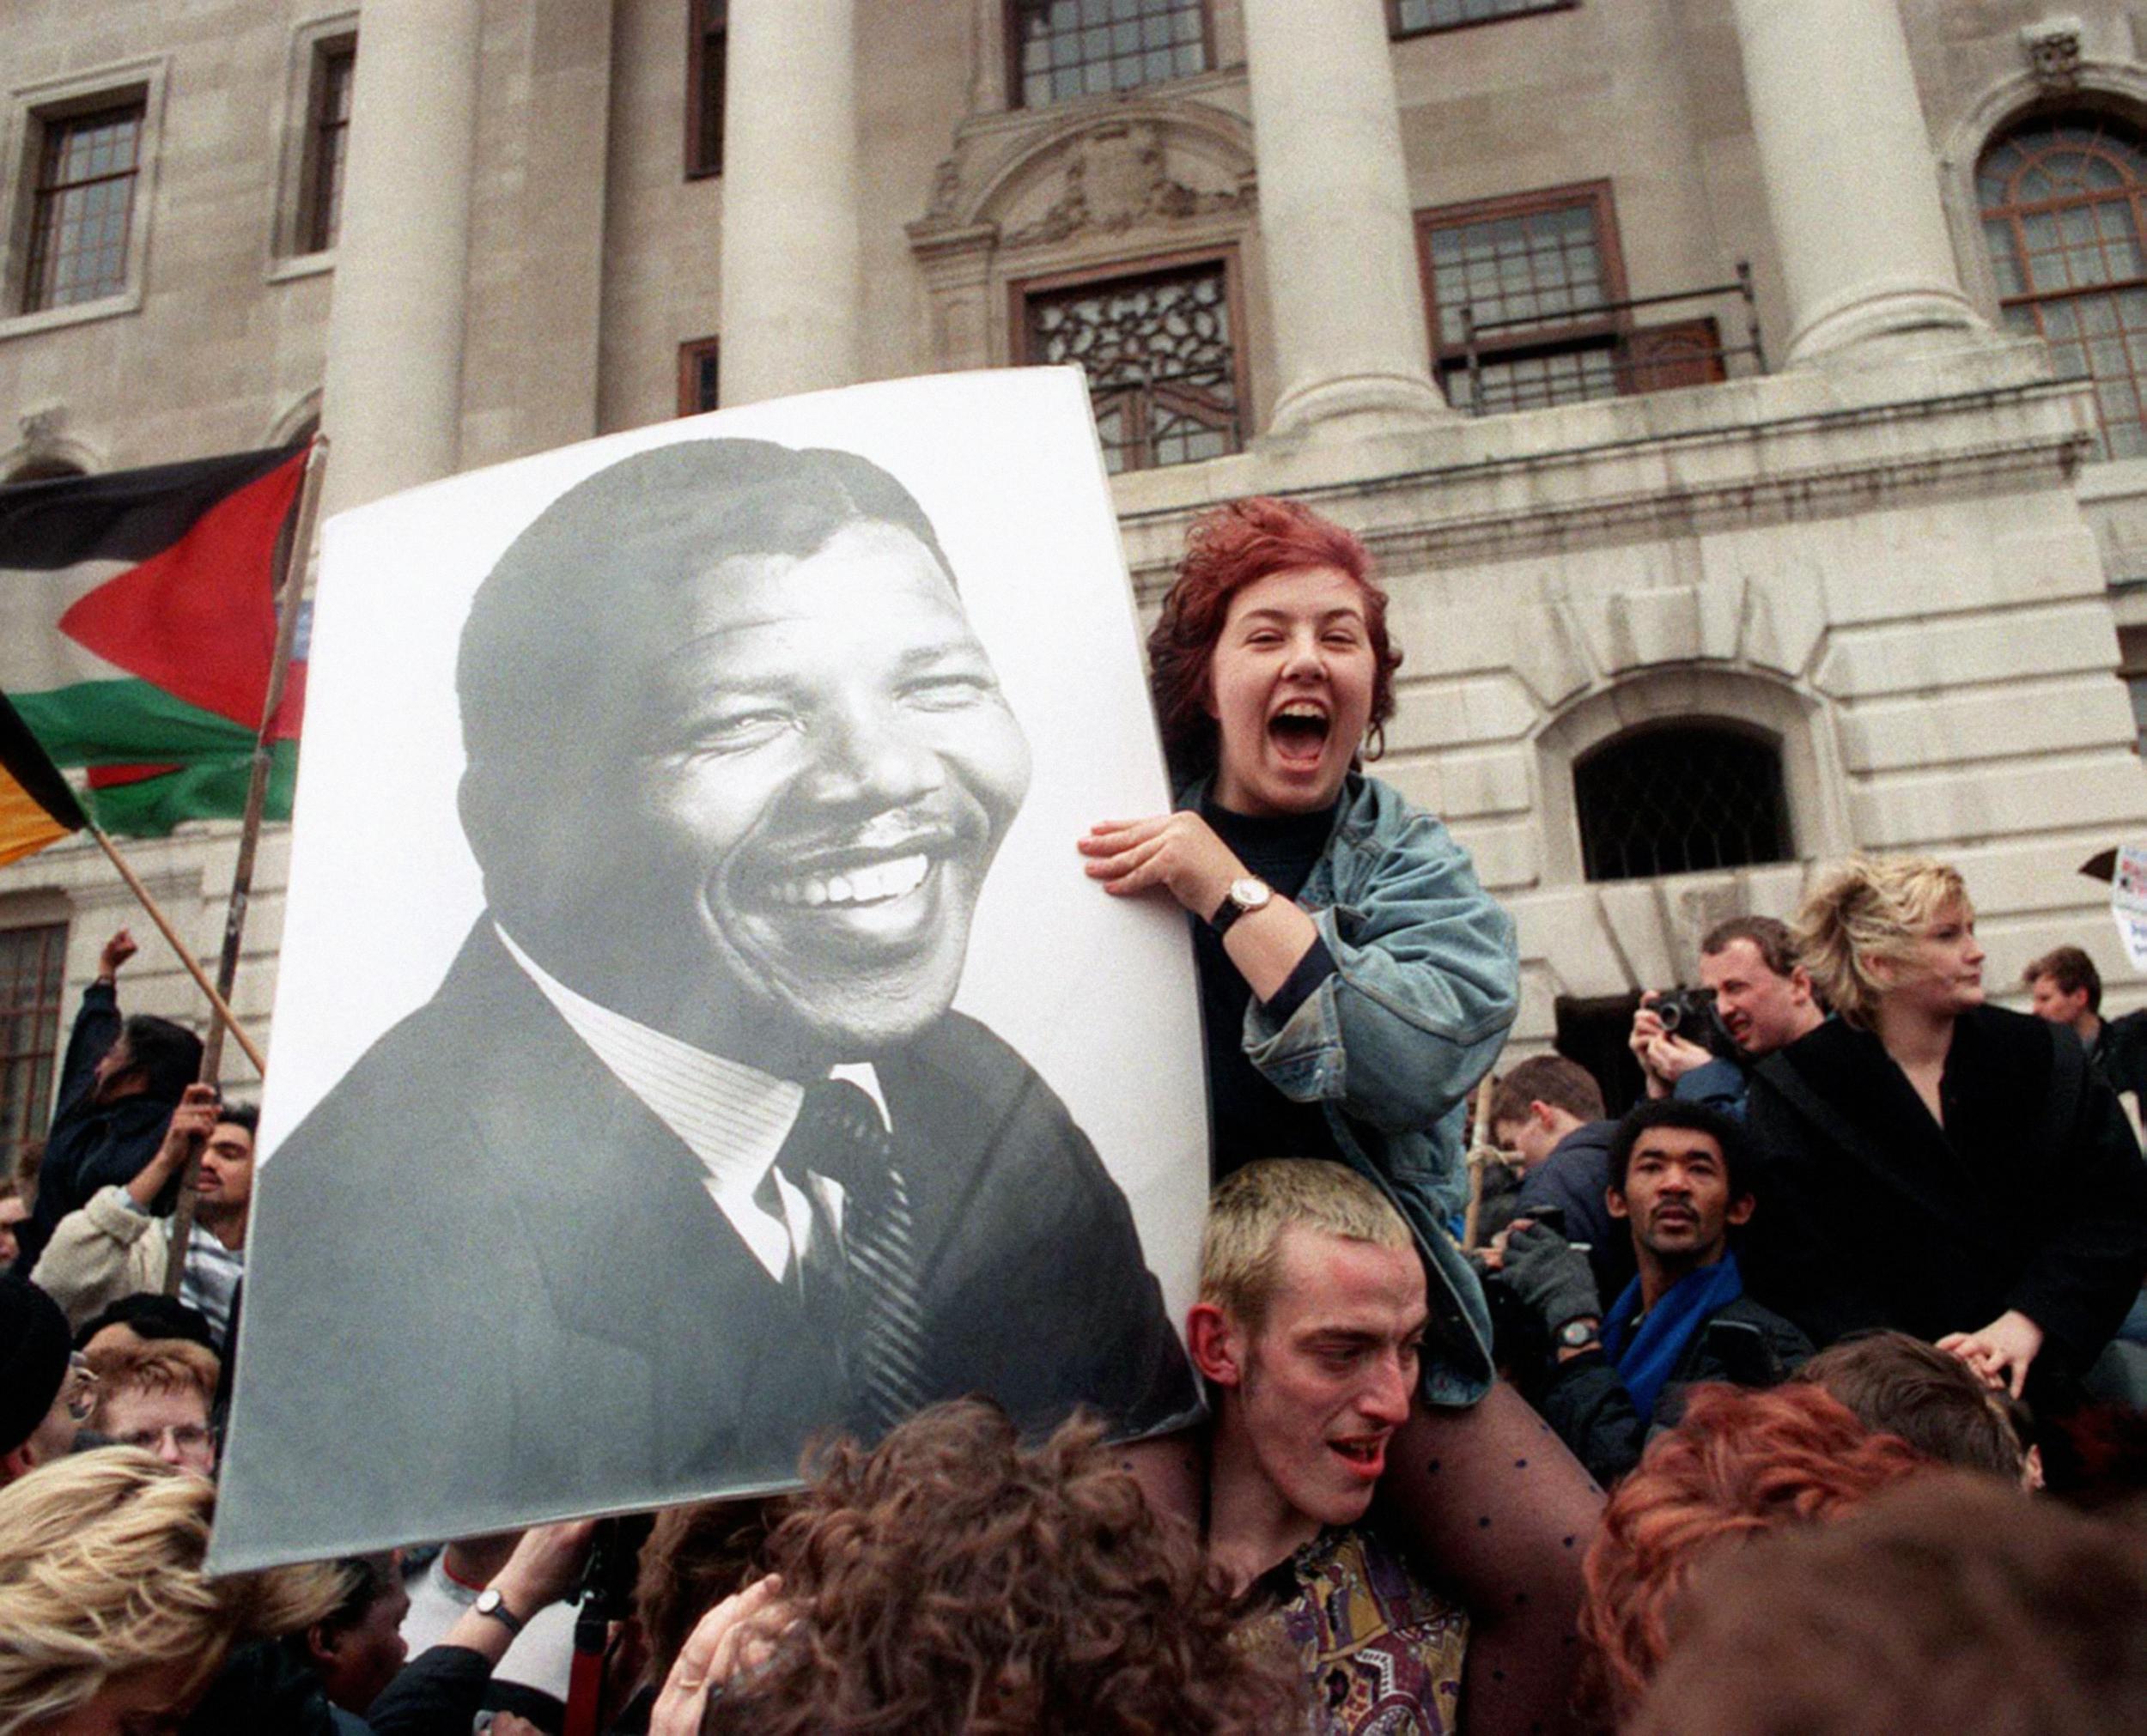 Crowds celebrate Mandela’s release in Trafalgar Square in 1990